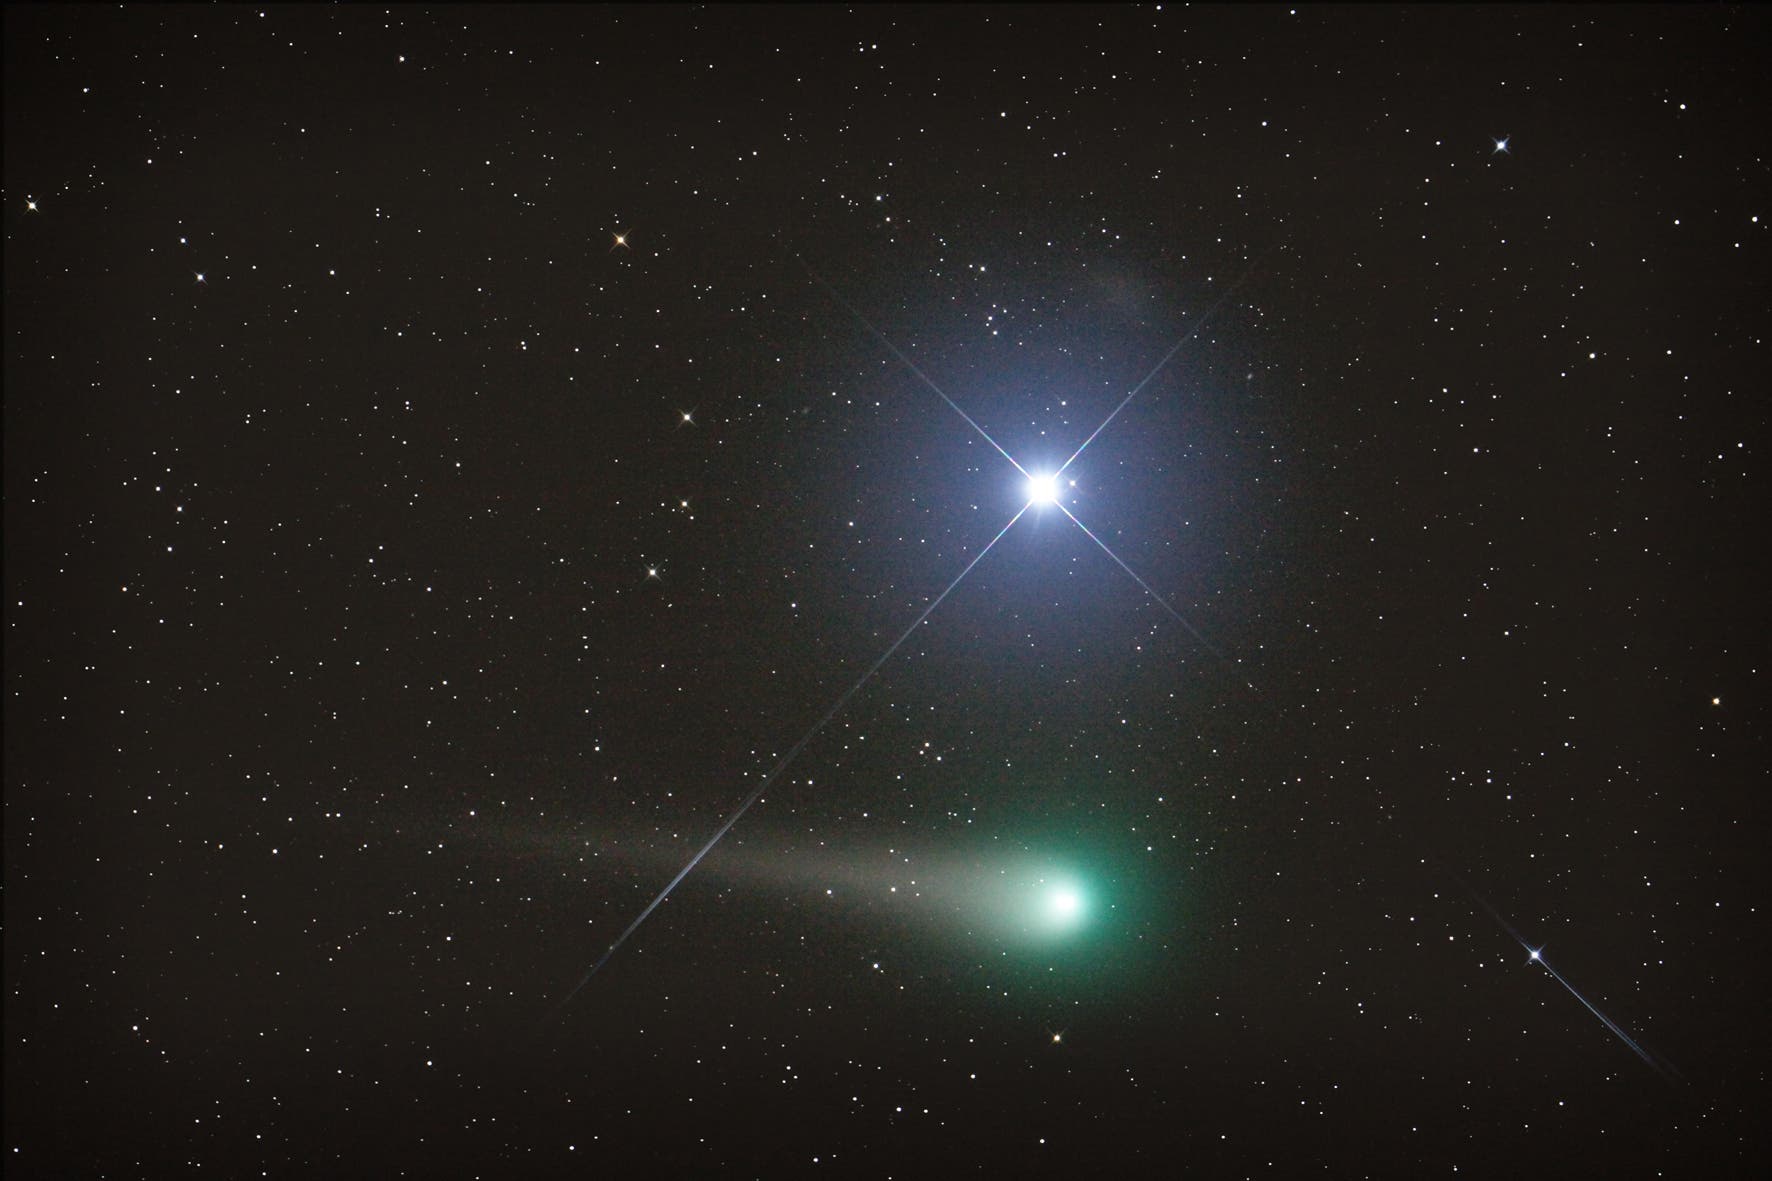 Komet C/2007 N3 (Lulin) mit Regulus und Leo I